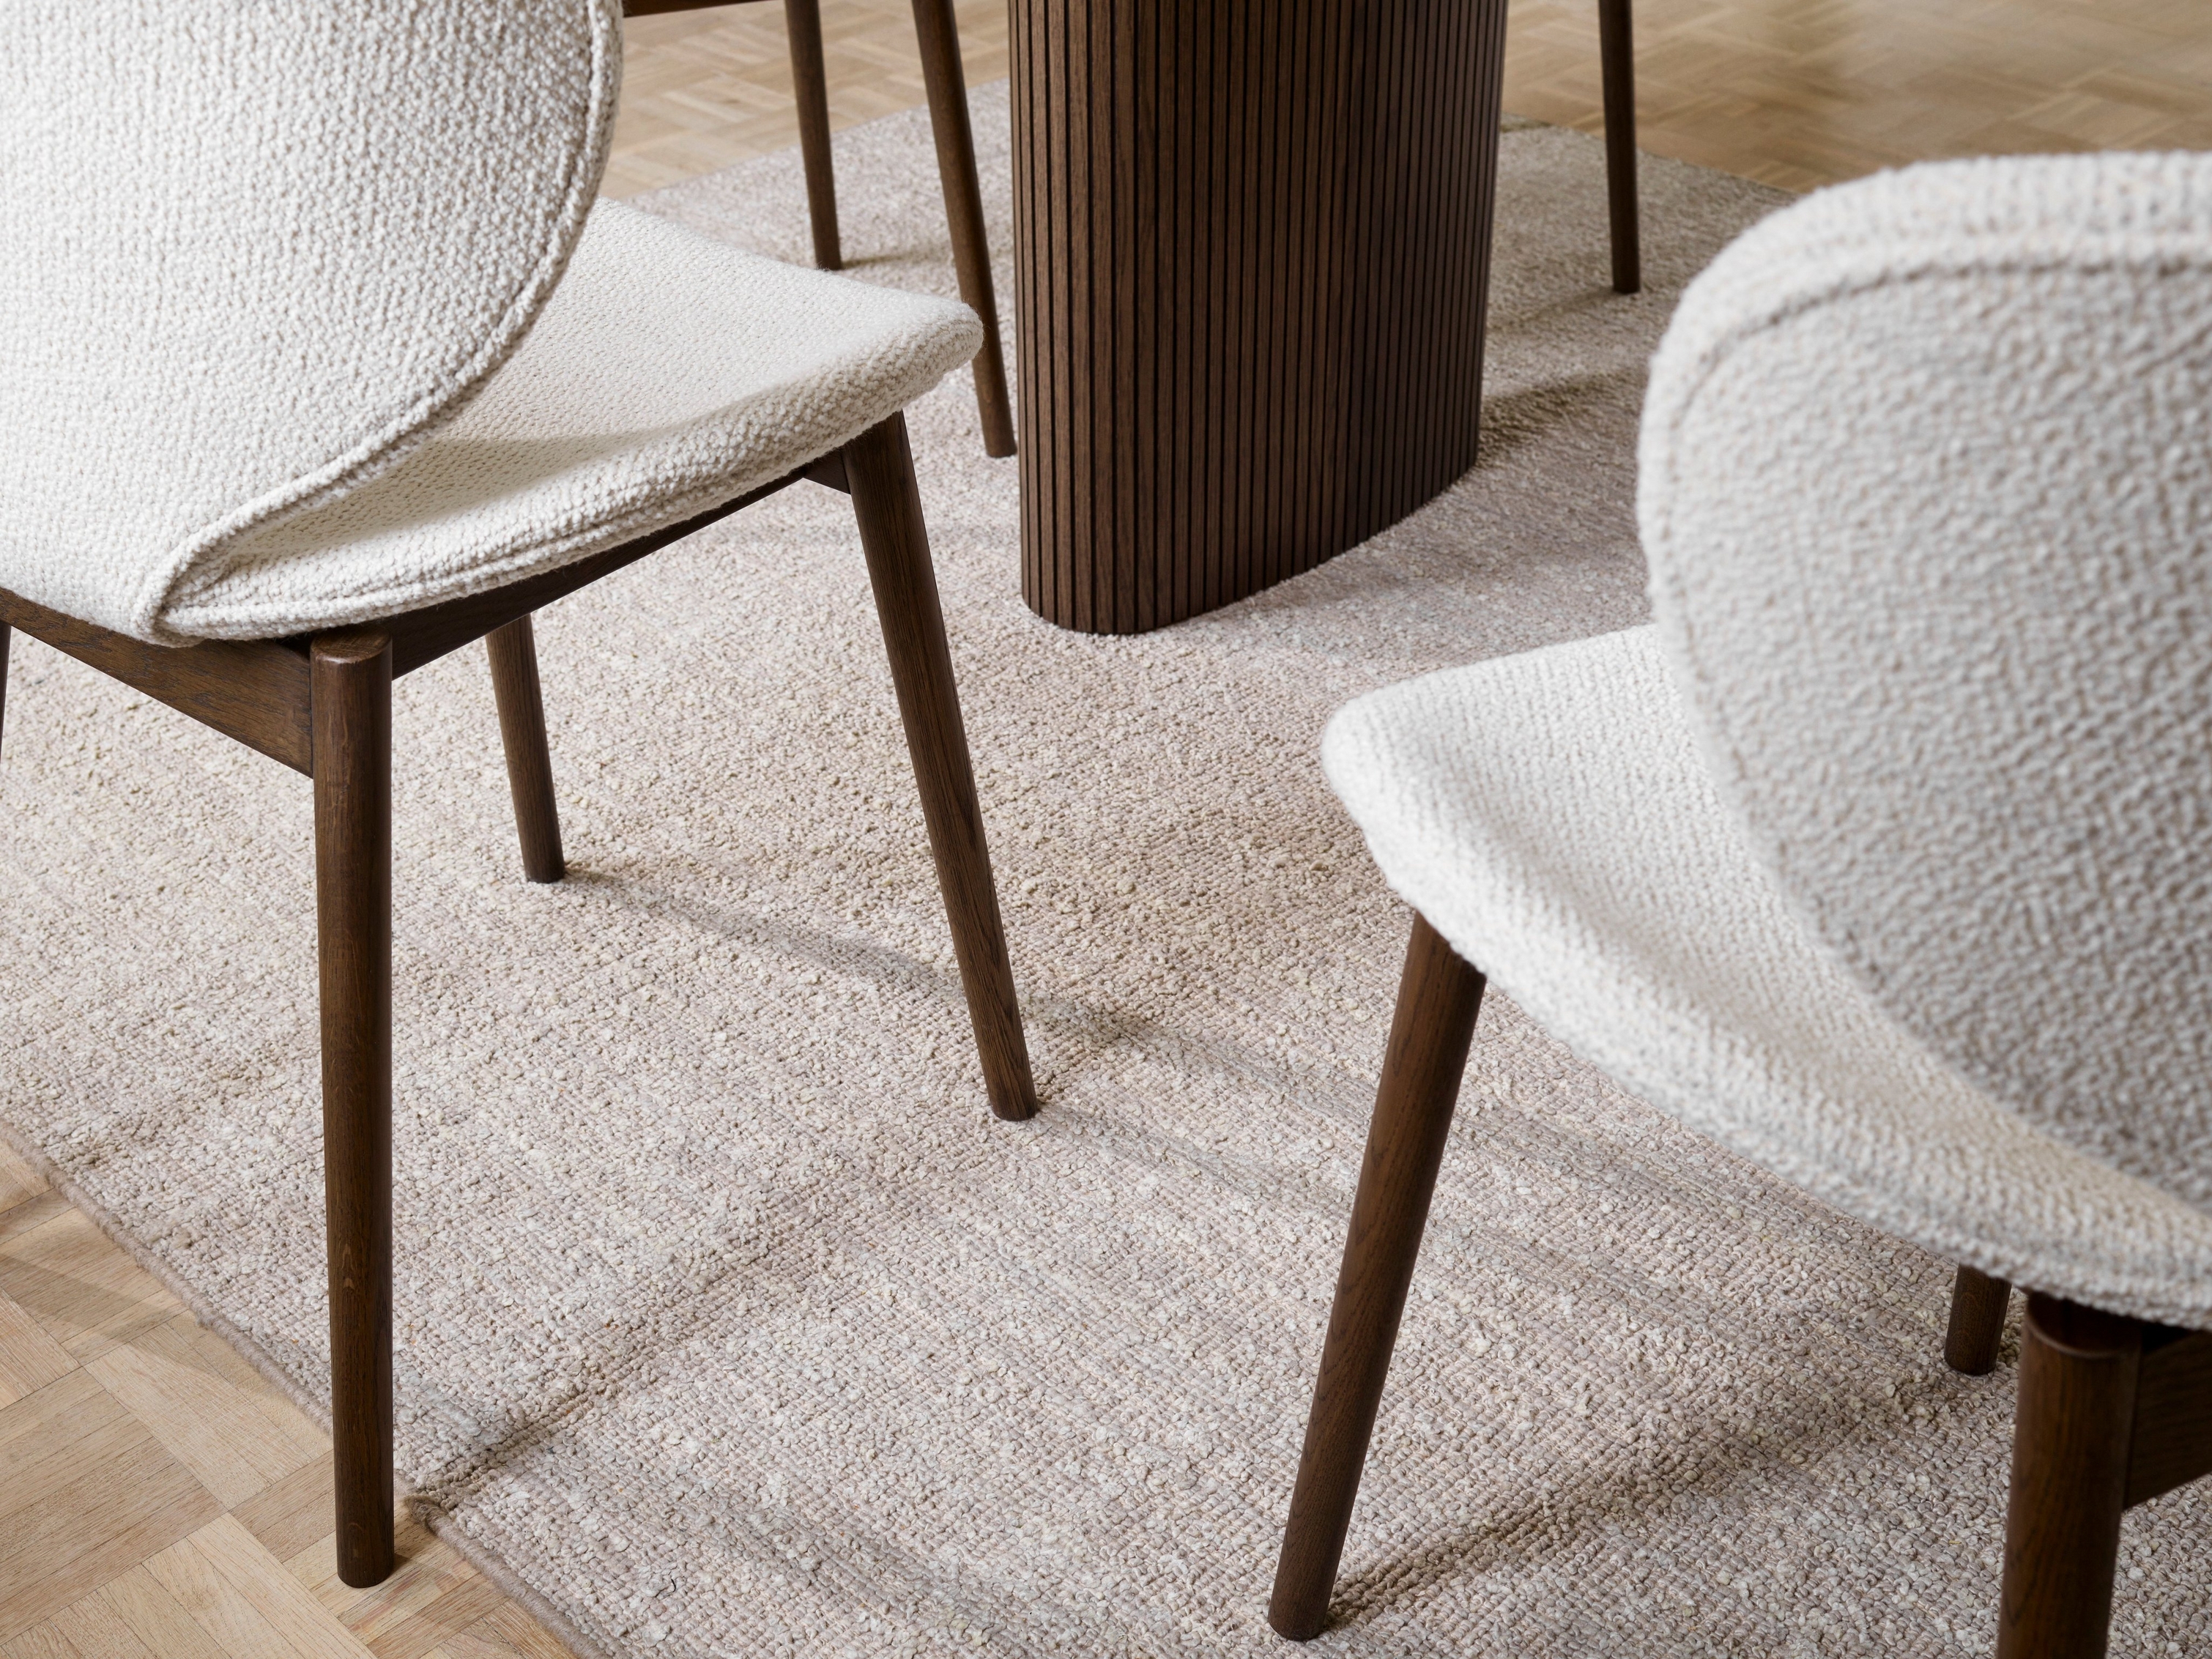 Sillas Hamilton texturizadas y alfombra con mesa de madera, centradas en los detalles del suelo.